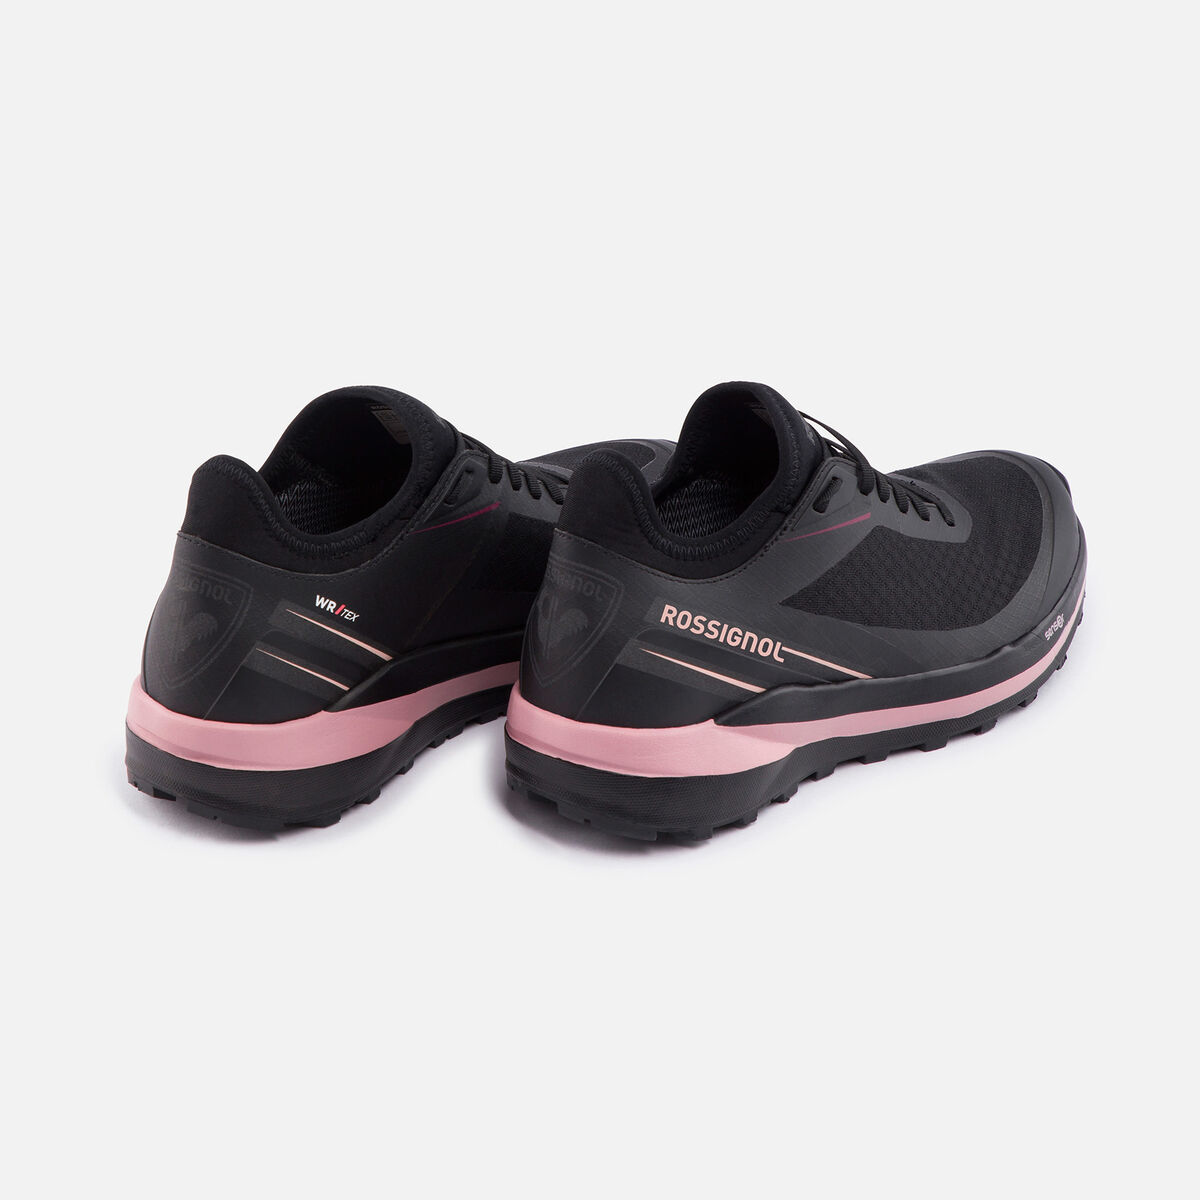 Rossignol Women's Waterproof Active Outdoor Shoes black